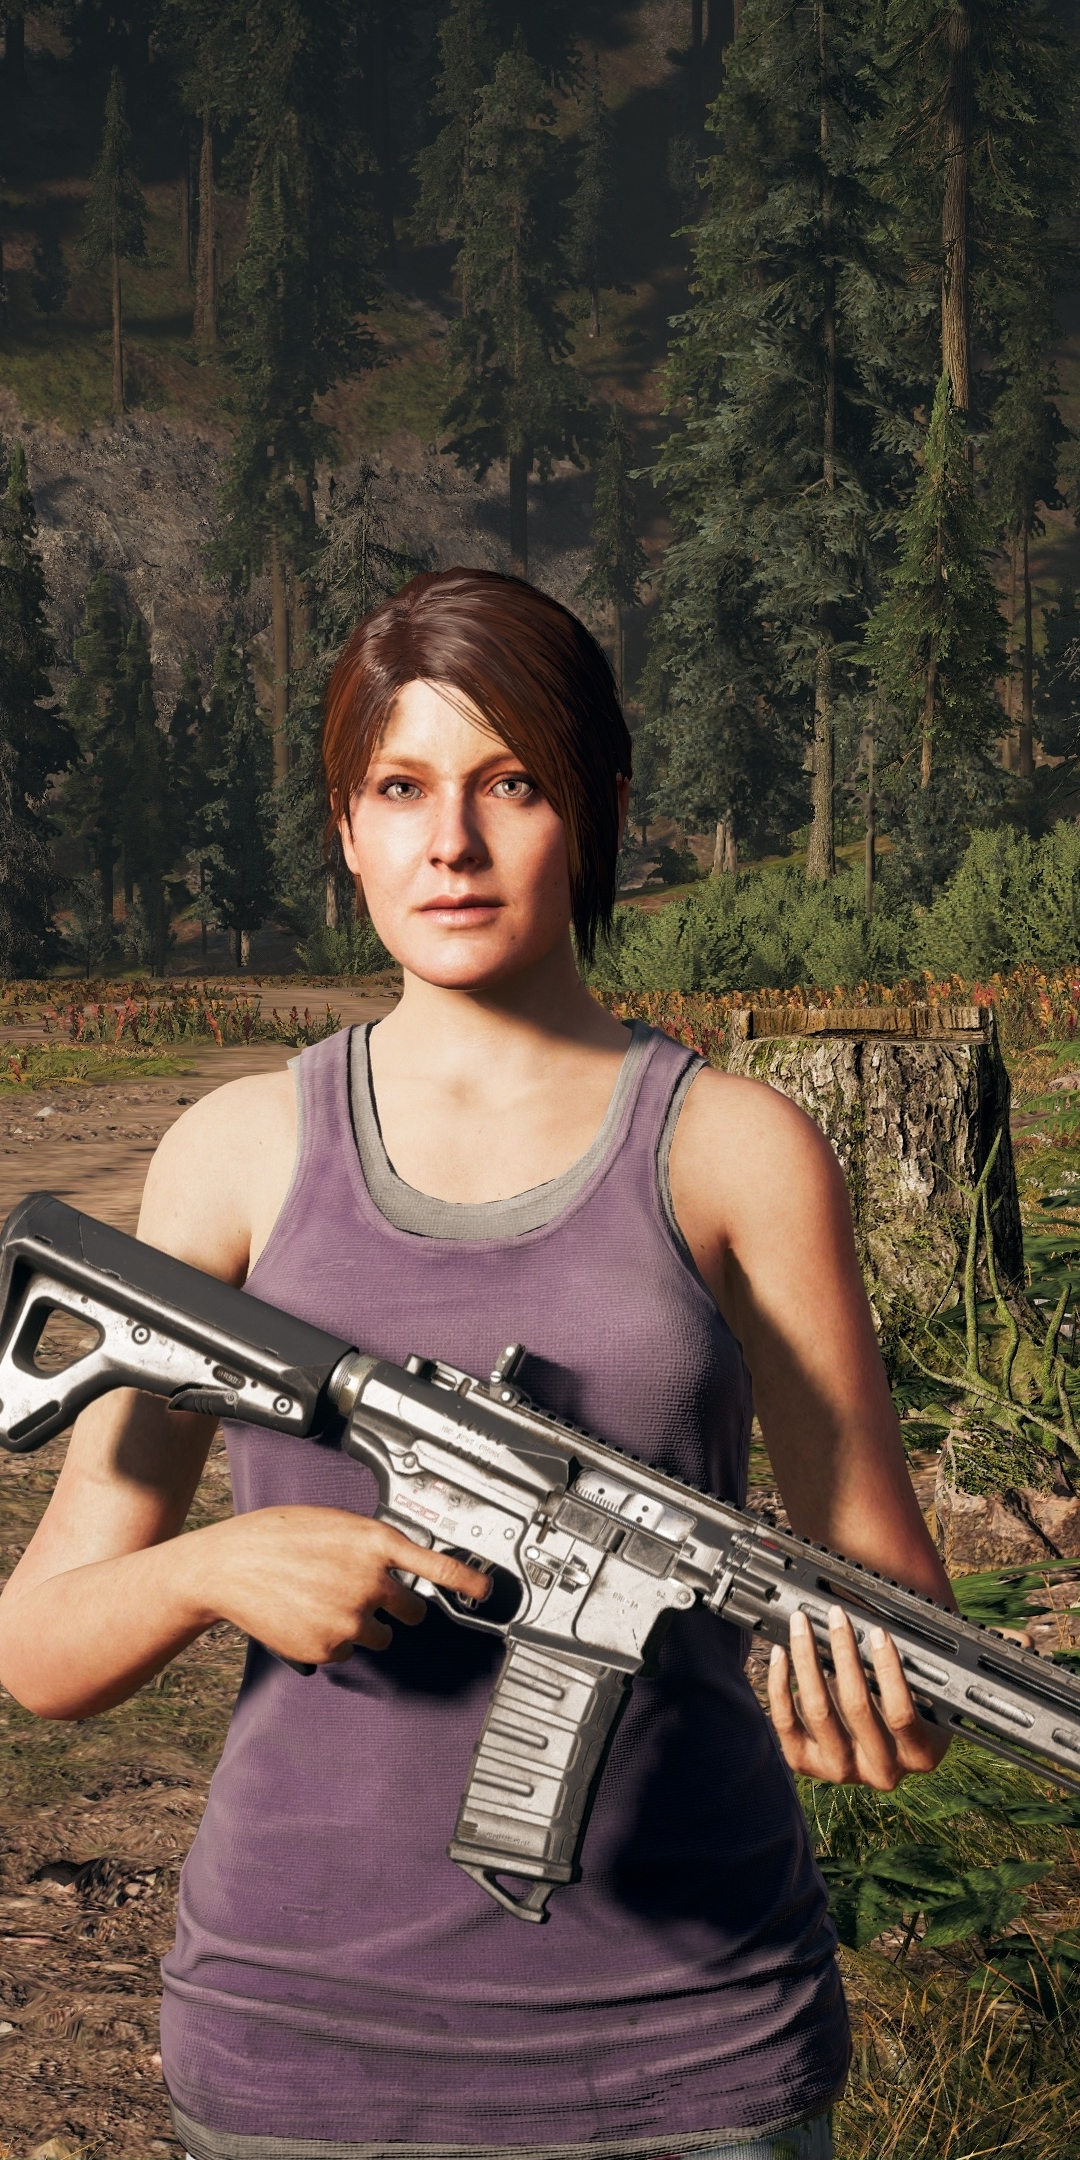 Far cry 5, woman with gun, outdoor, 2018, 1080x2160 wallpaper